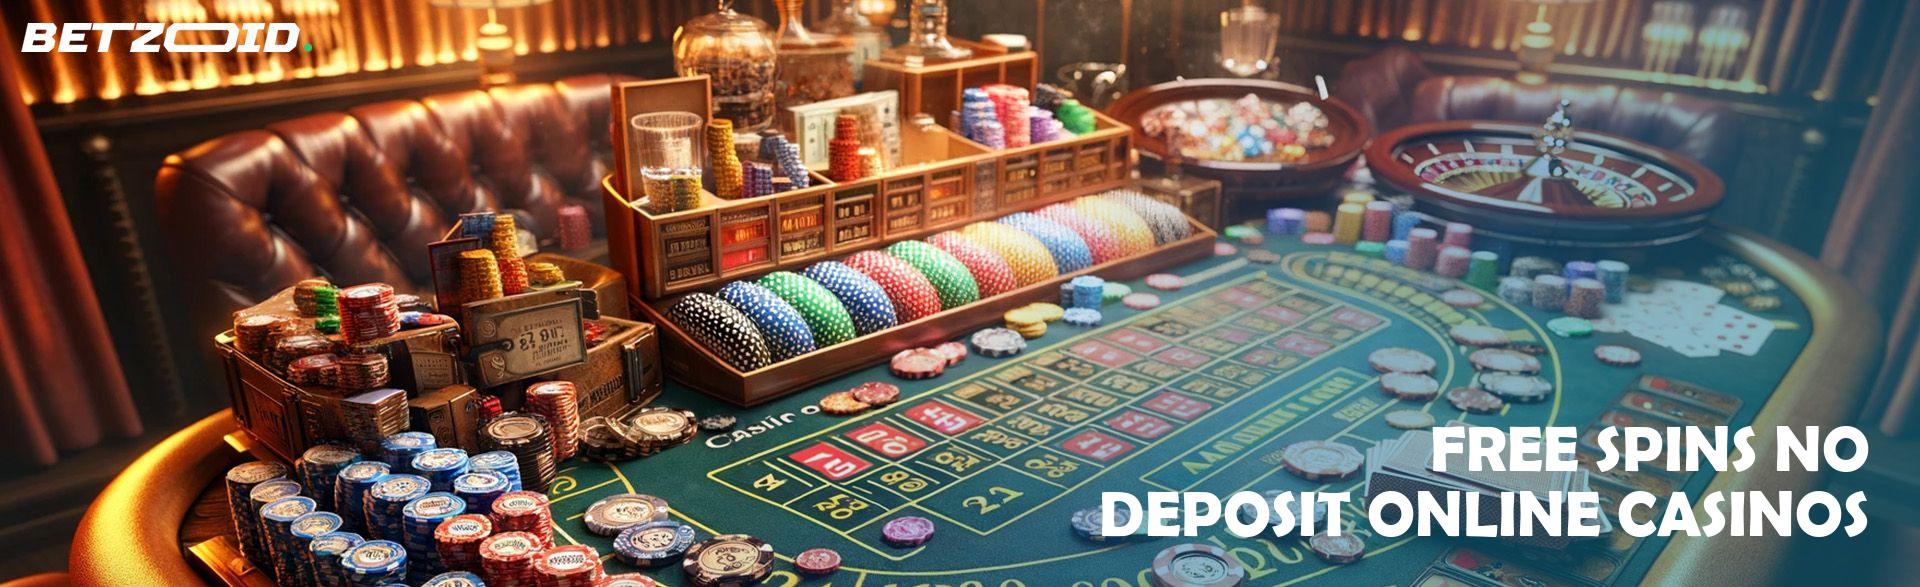 Free Spins No Deposit Online Casinos.